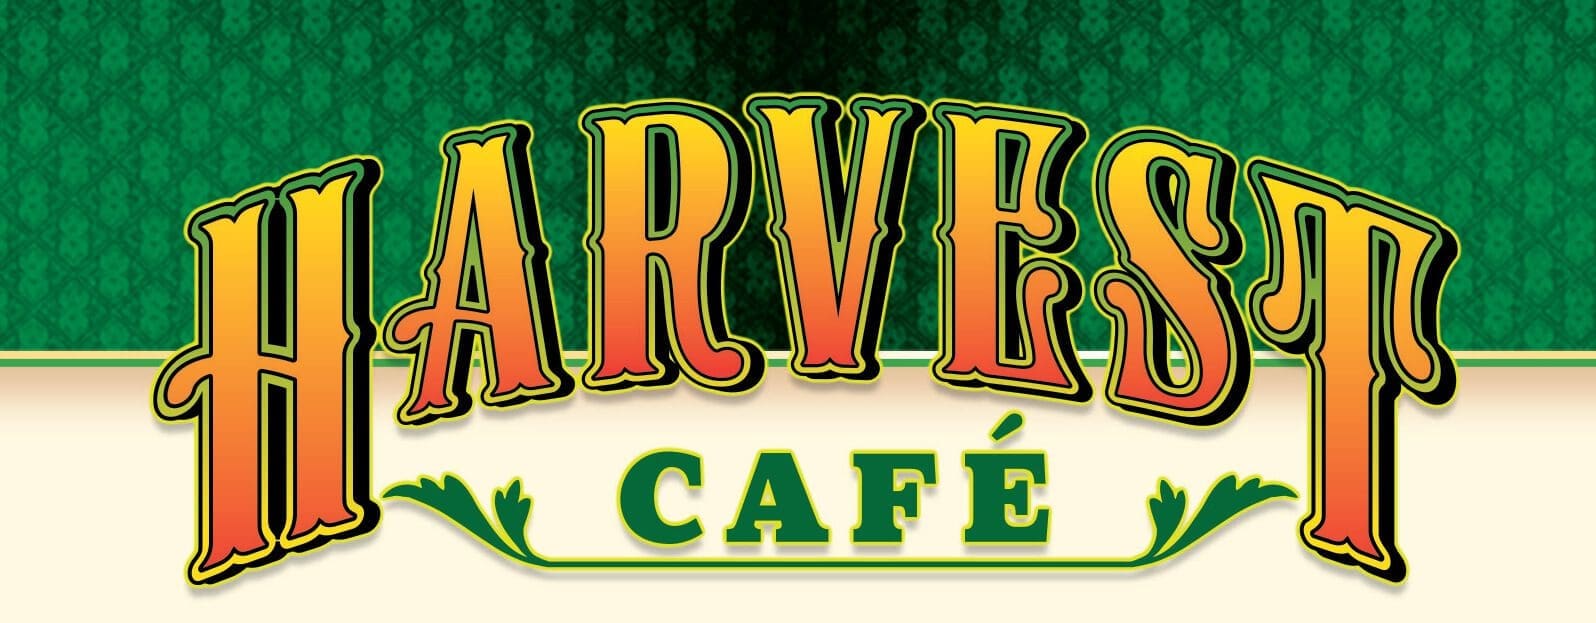 Harvest Cafe Logo and illustration